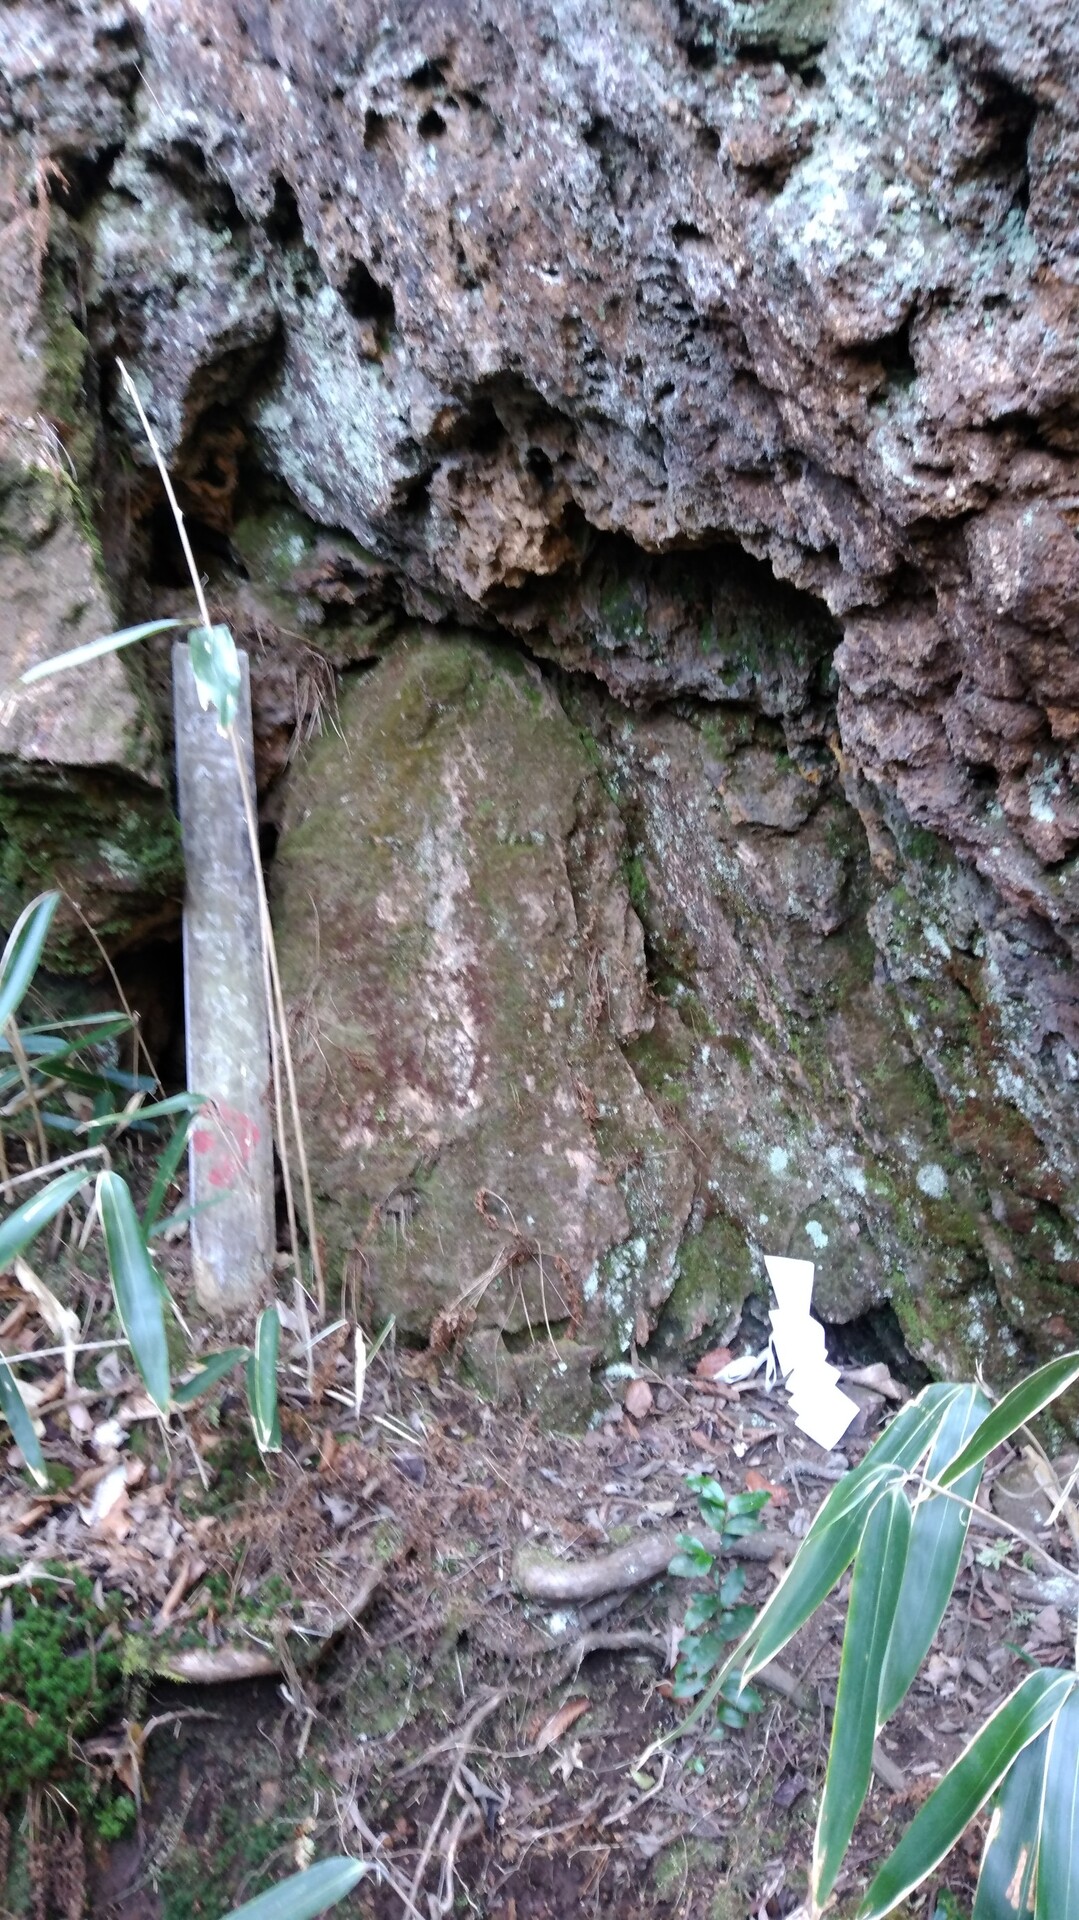 御岩神社 03 19 日立アルプストレイル 神峯山の写真26枚目 天岩戸 神さまが降臨した場所だそうです Yamap ヤマップ